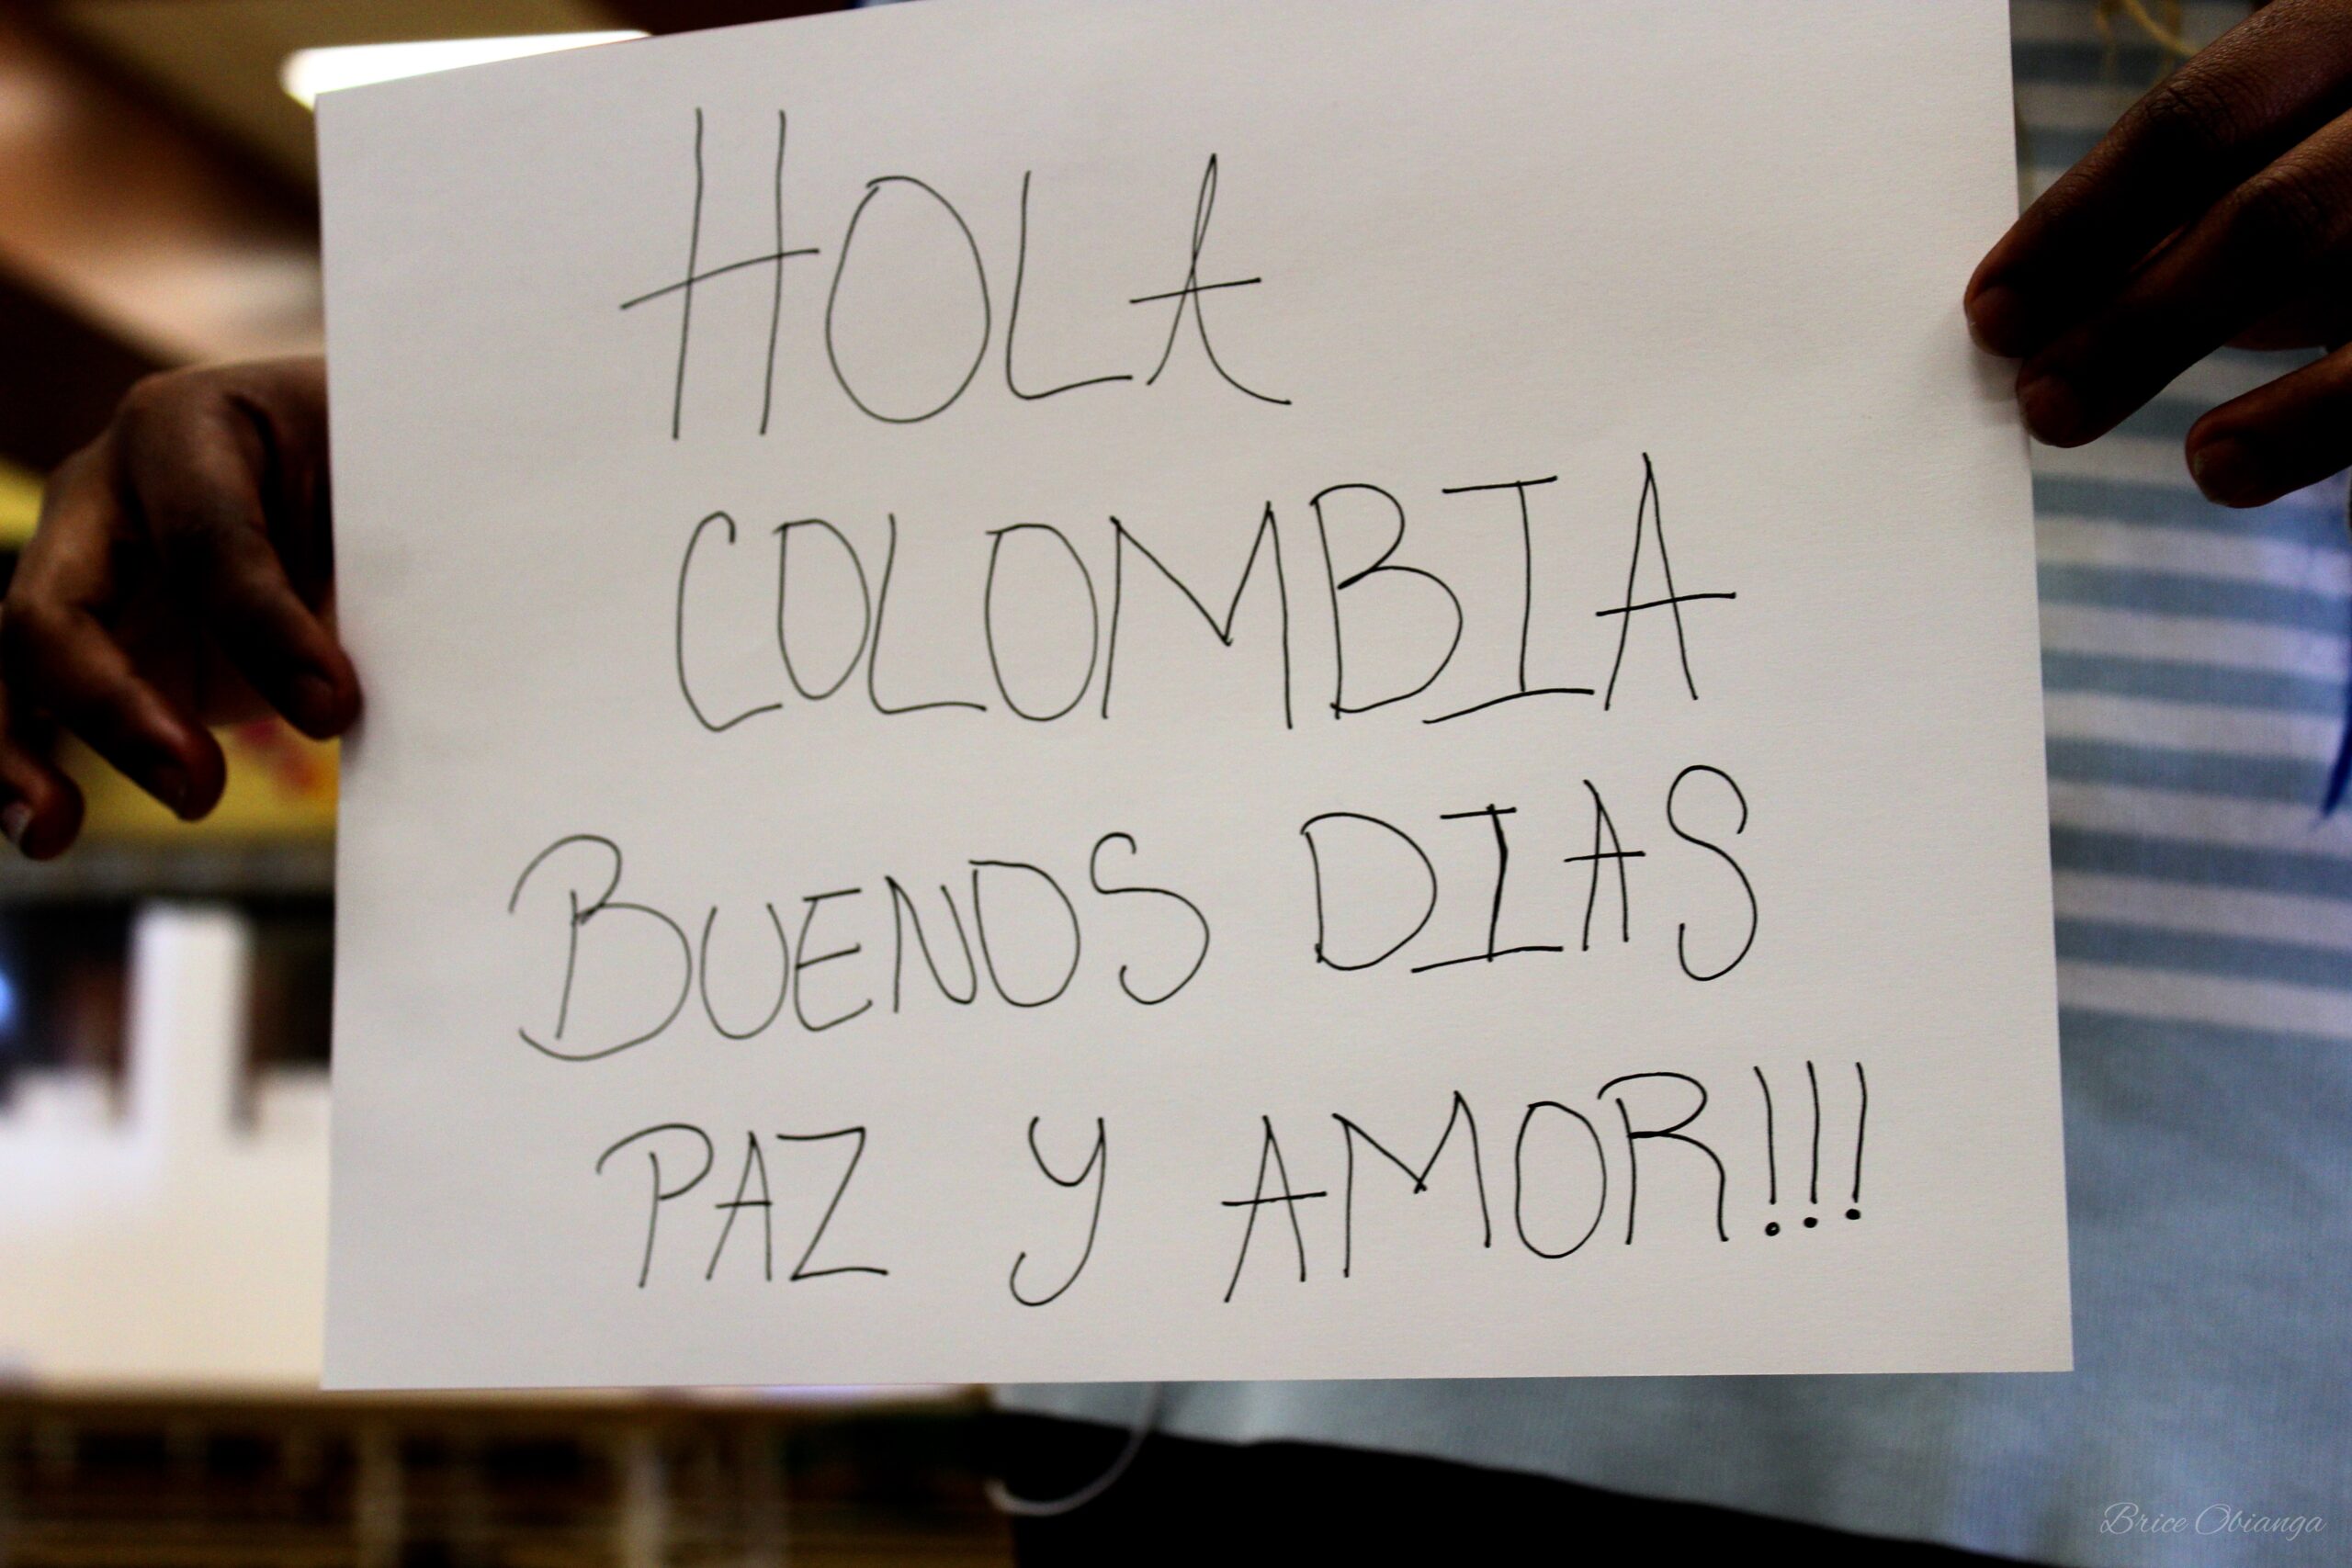 « Bonjour la Colombie paix et amour à tous » - mot rédigé en espagnol